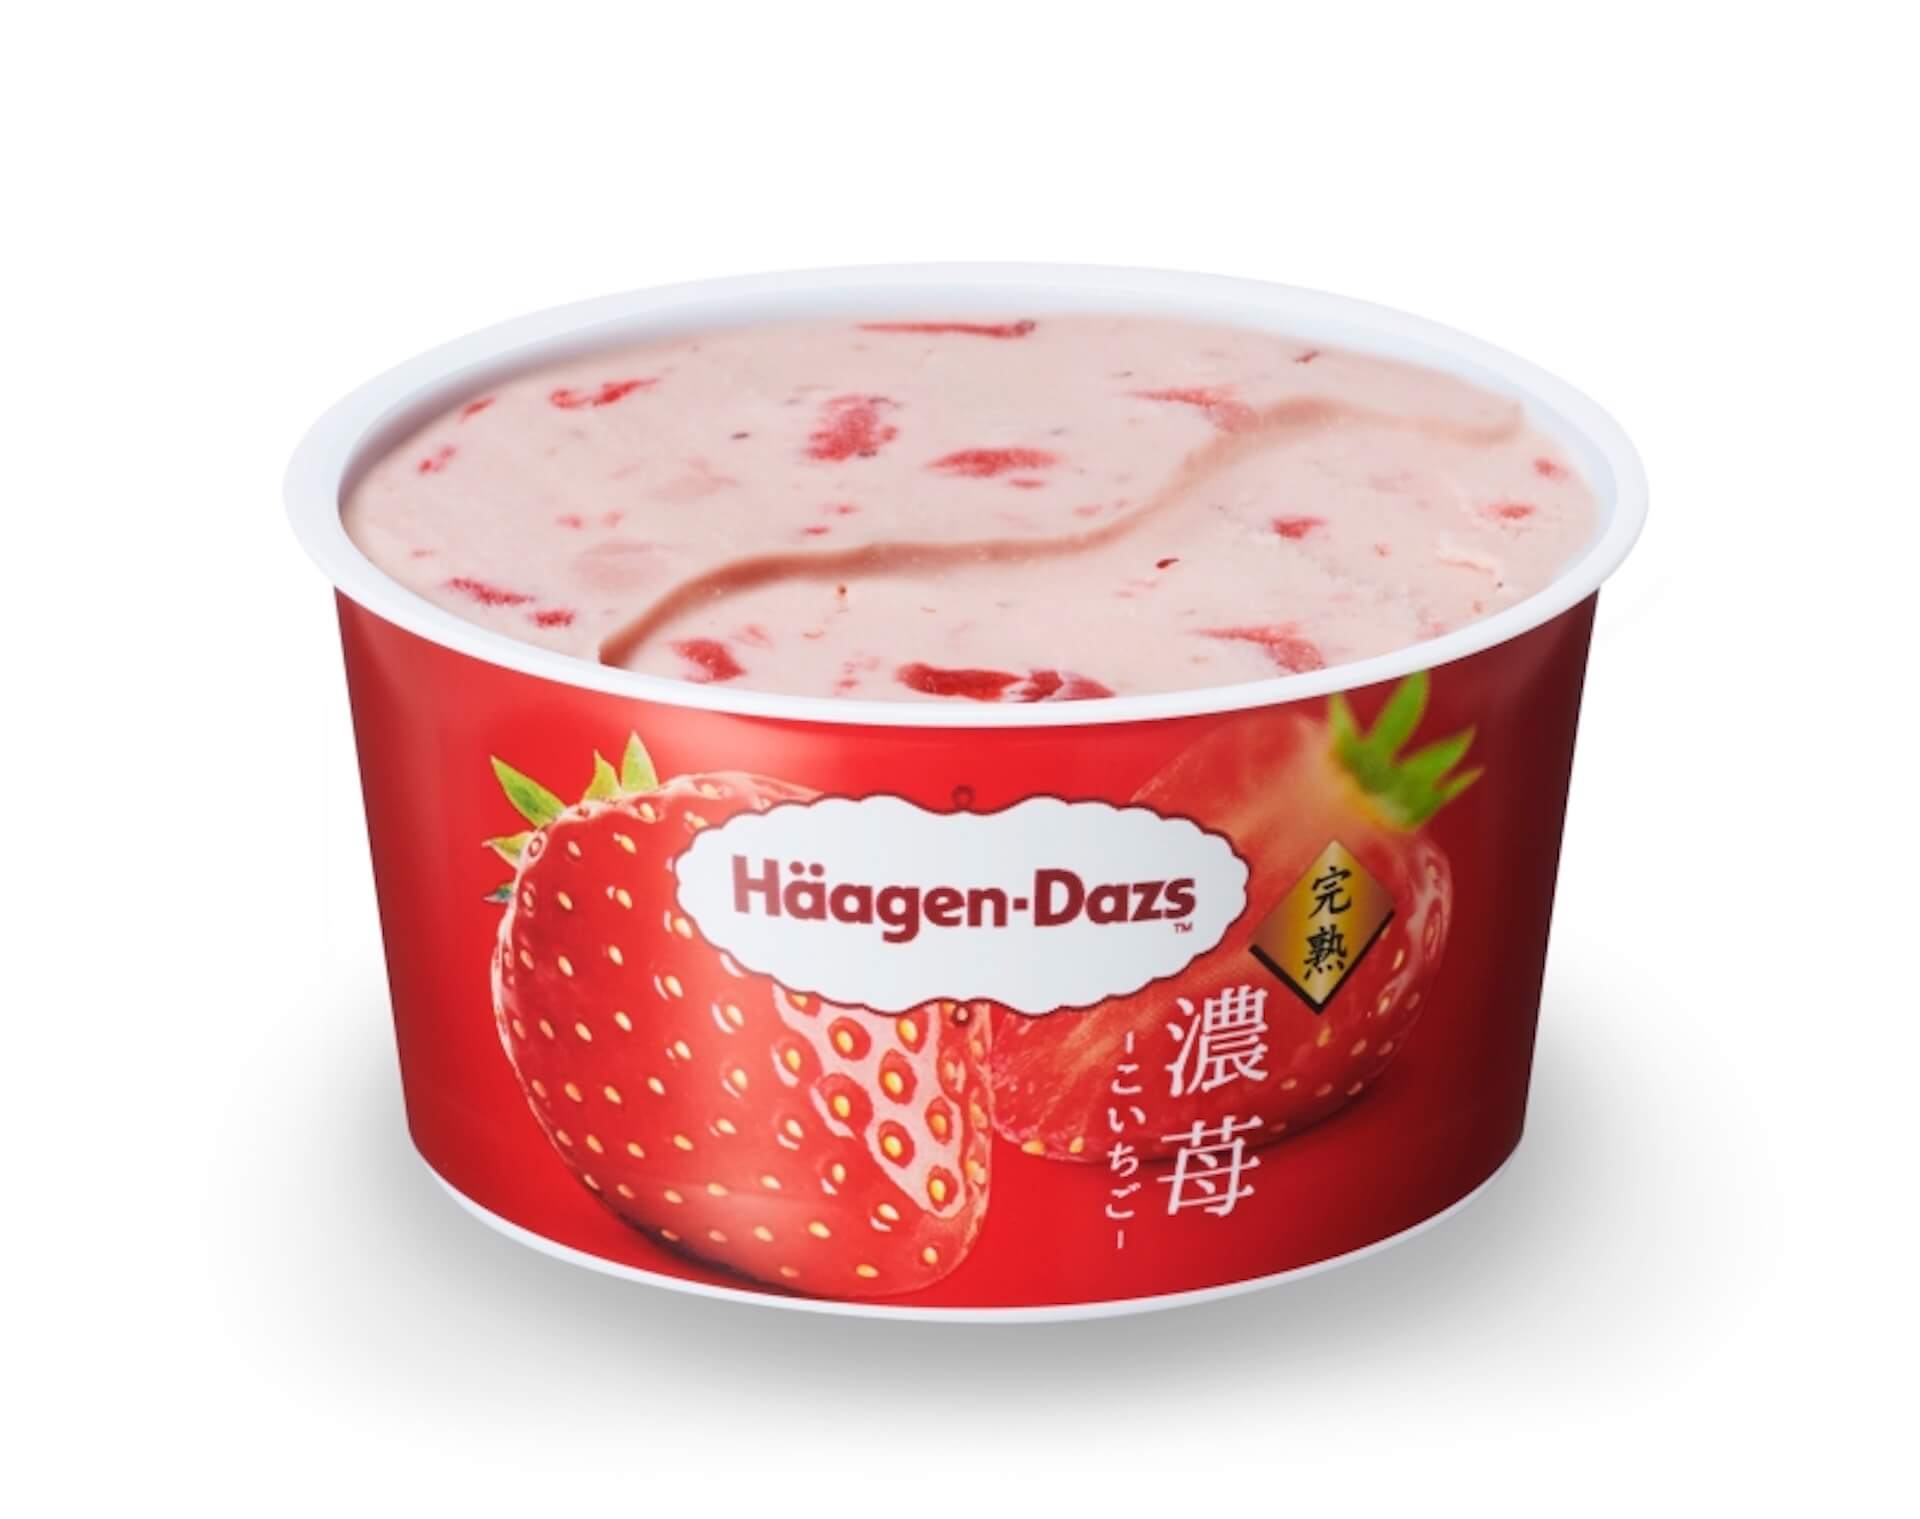 ハーゲンダッツから超濃厚ないちごの美味しさを凝縮したアイスクリーム『濃苺』が新発売！ gourmet210726_haagendazs_koichigo_1